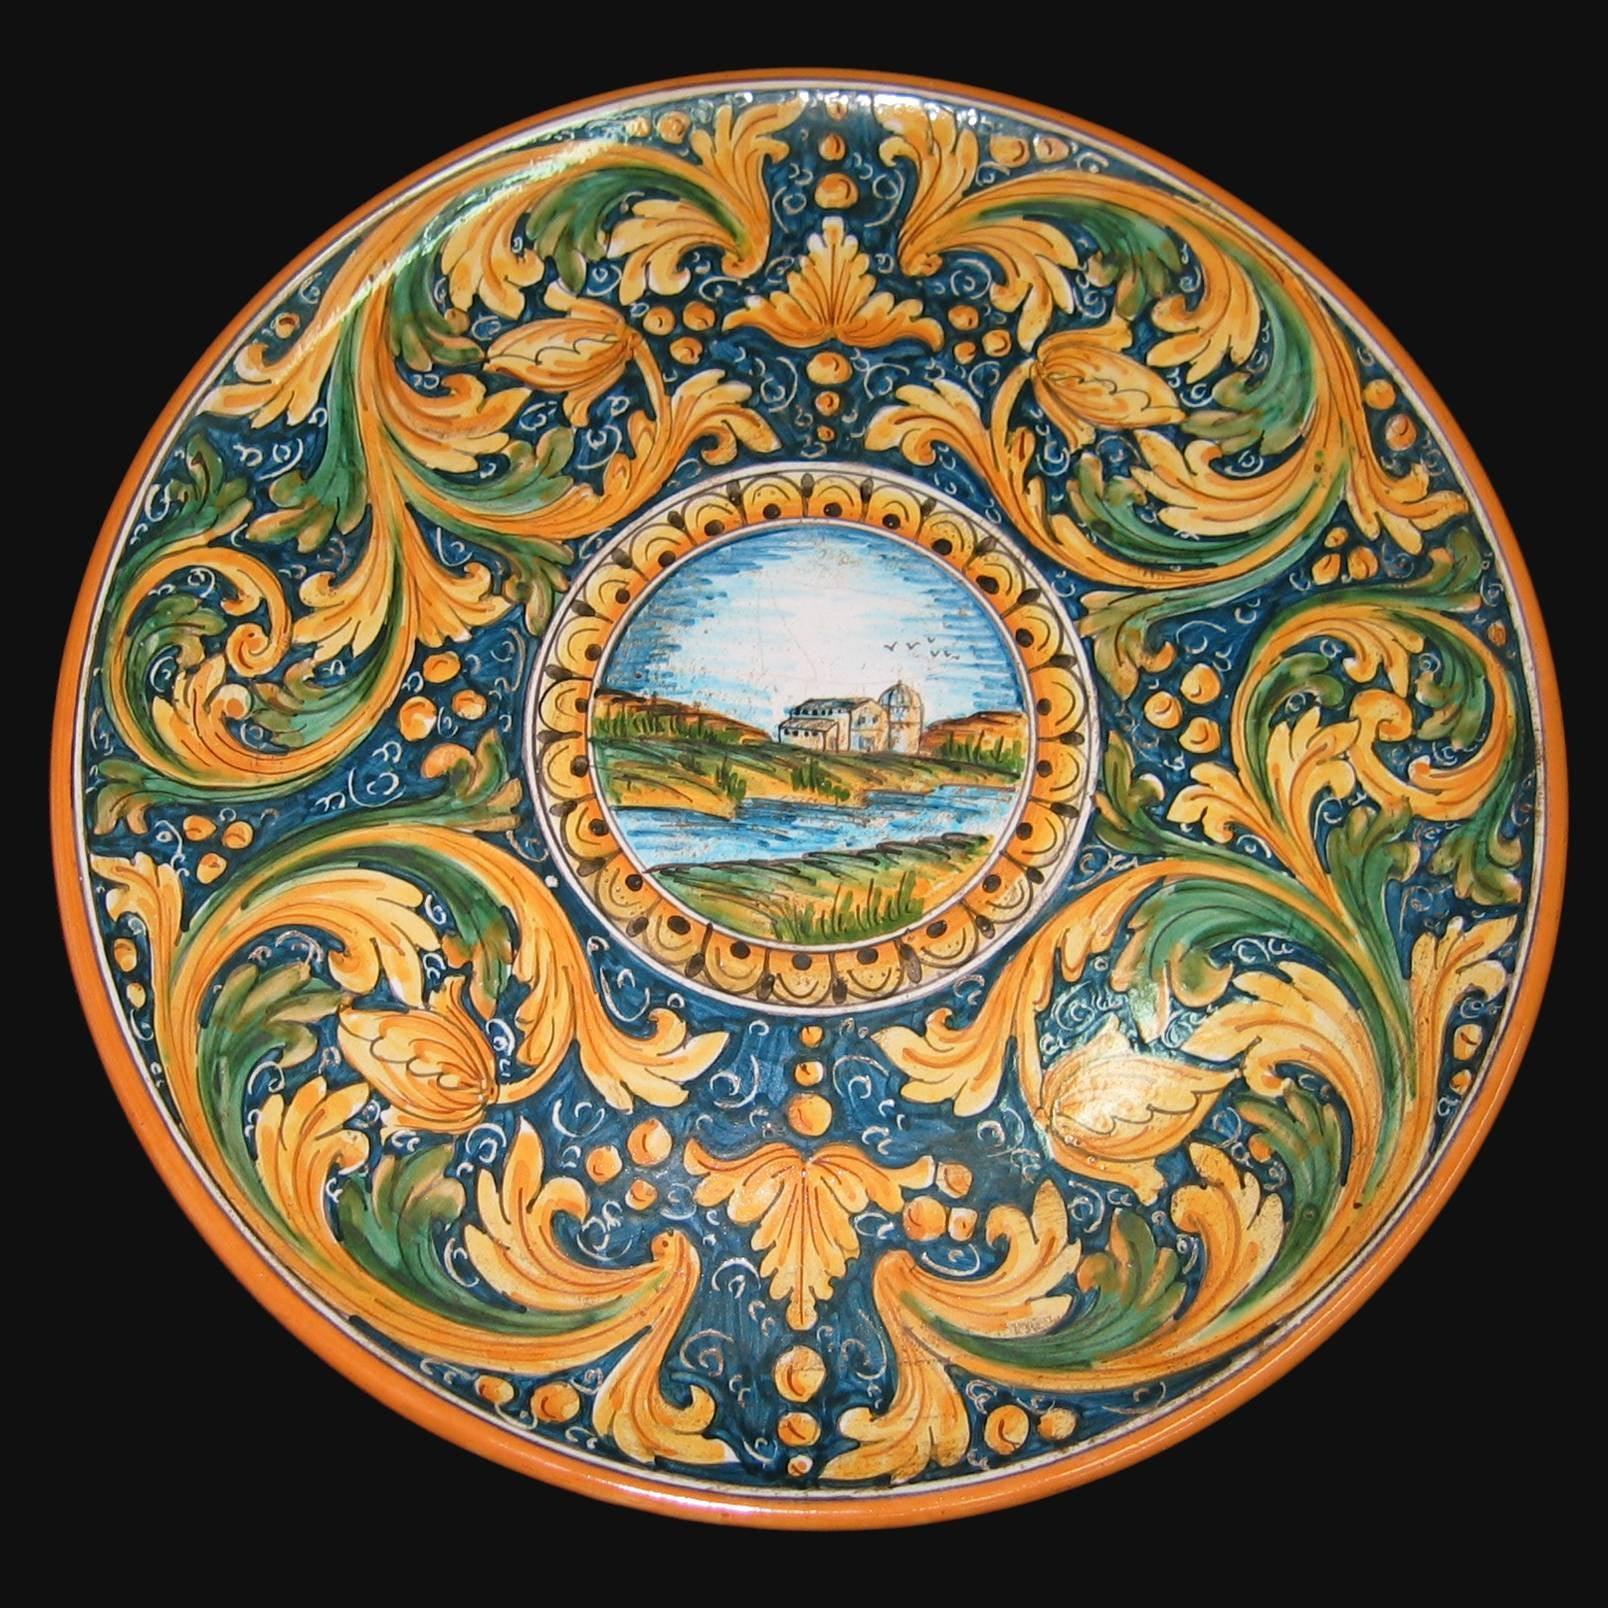 Piatto con paesaggio ornato calatino in ceramica artigianale di Caltagirone. - Ceramiche di Caltagirone Sofia